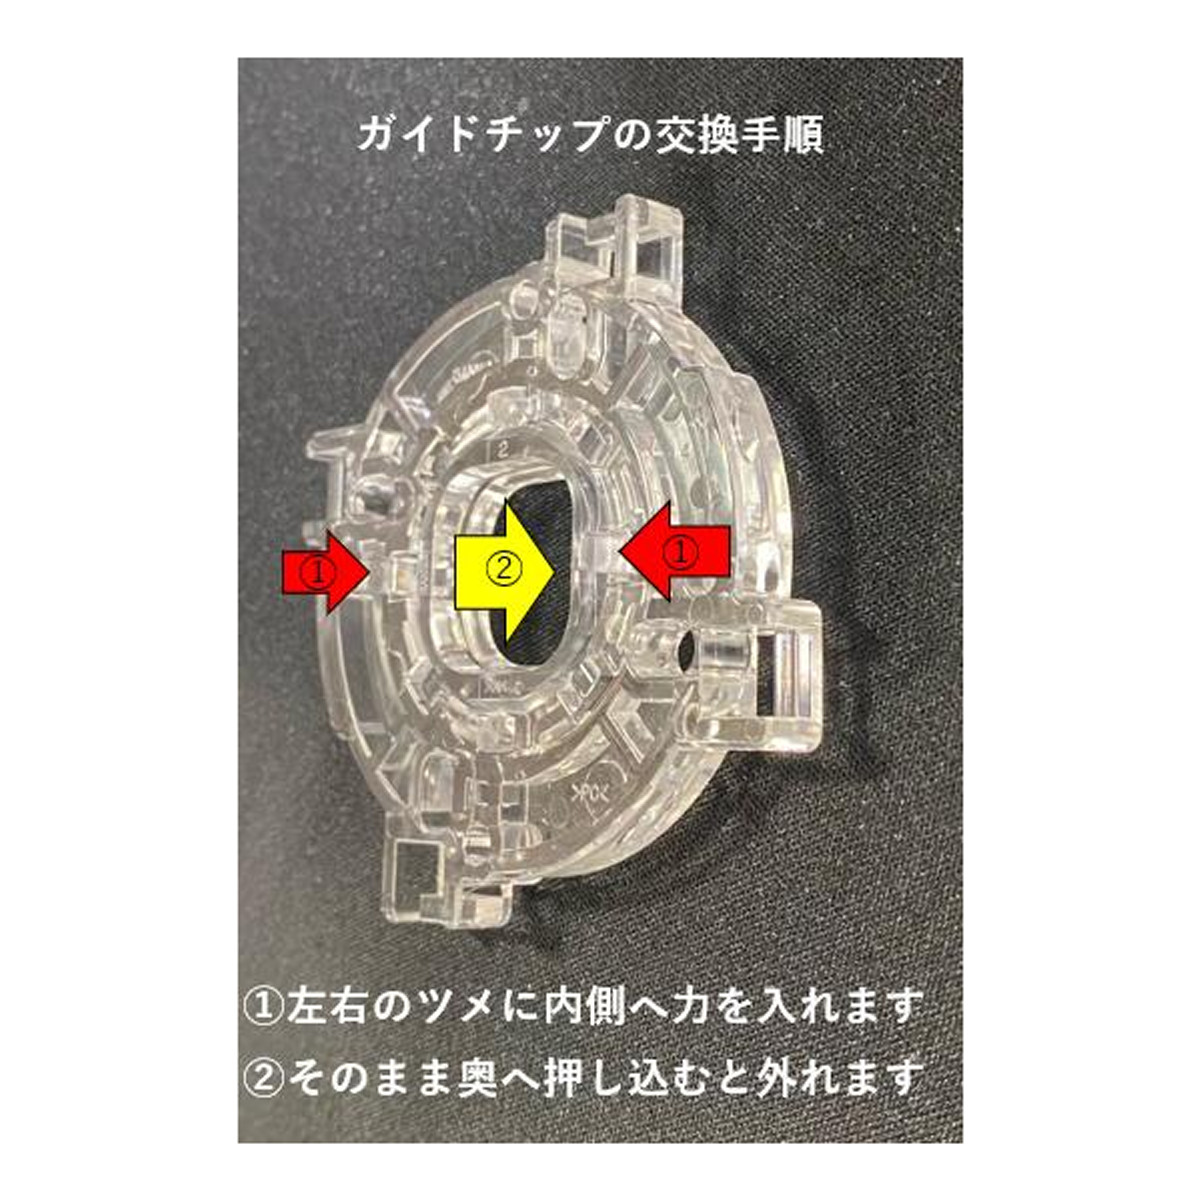 【三和電子】 JLFレバーカスタマイズ用新ガイド 【GT-8X】